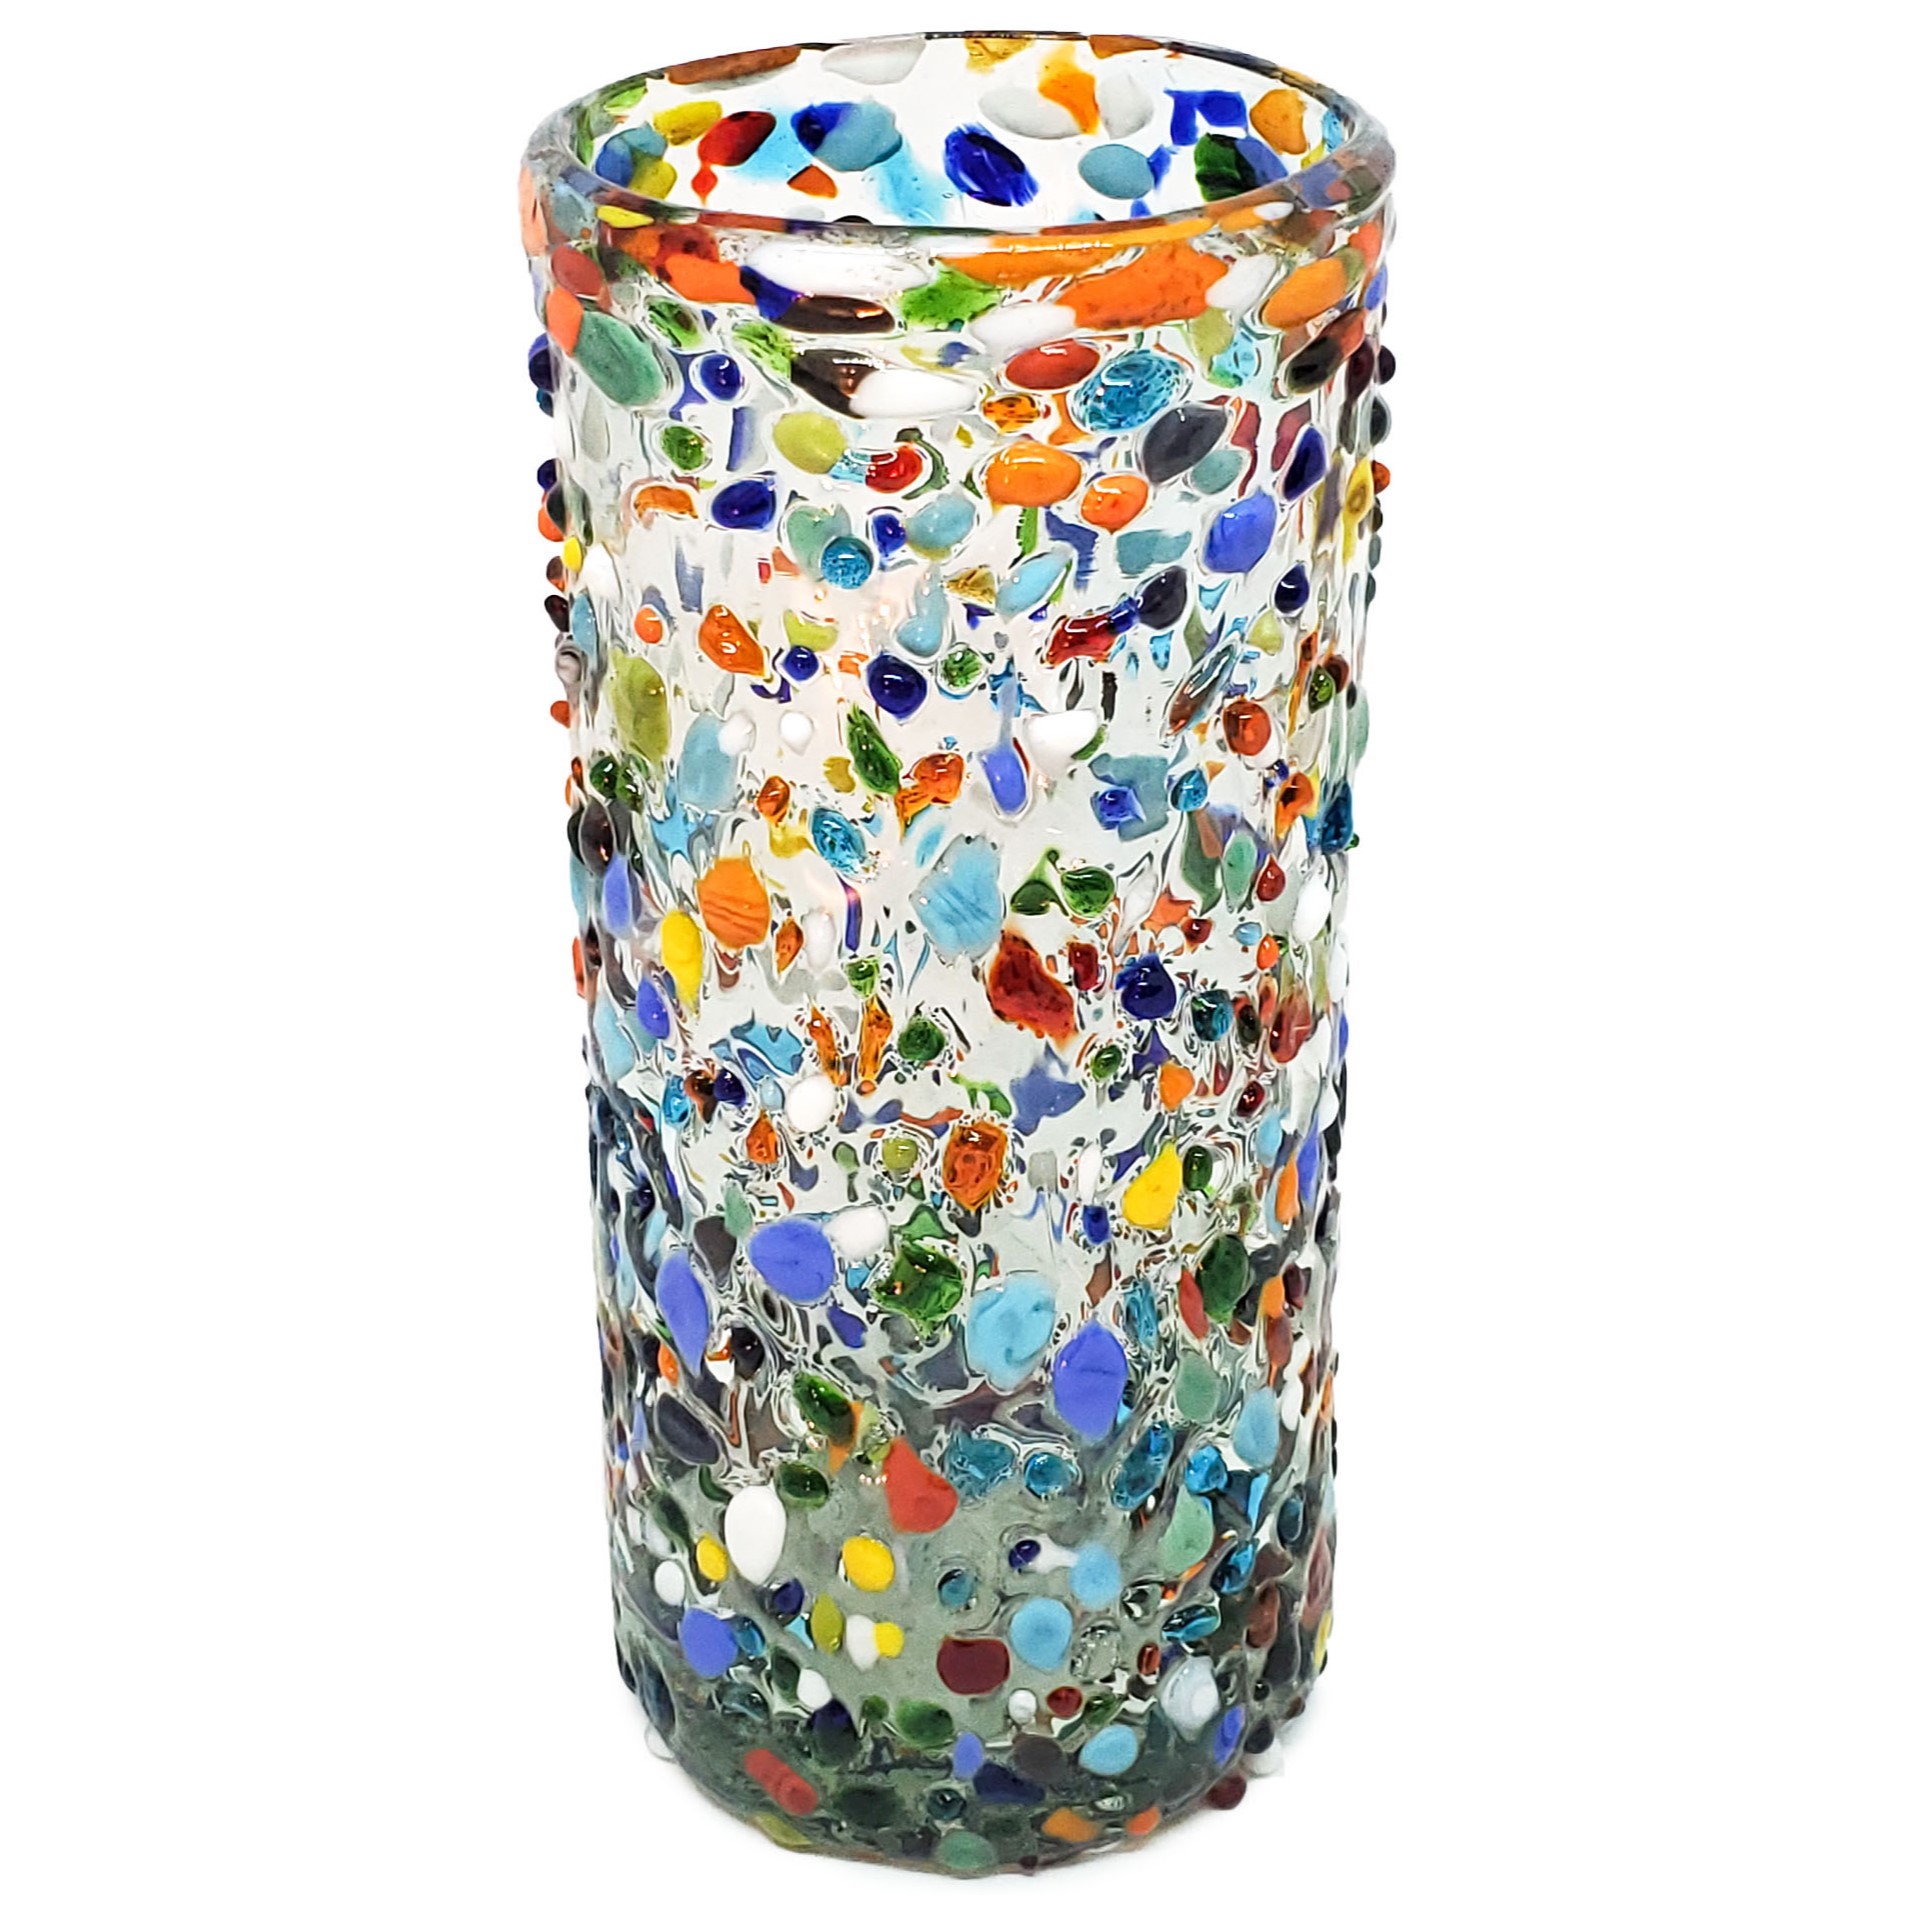 Estilo Confeti al Mayoreo / vasos Jumbo 20oz Confeti granizado / Deje entrar a la primavera en su casa con éste colorido juego de vasos. El decorado con vidrio multicolor los hace resaltar en cualquier lugar.